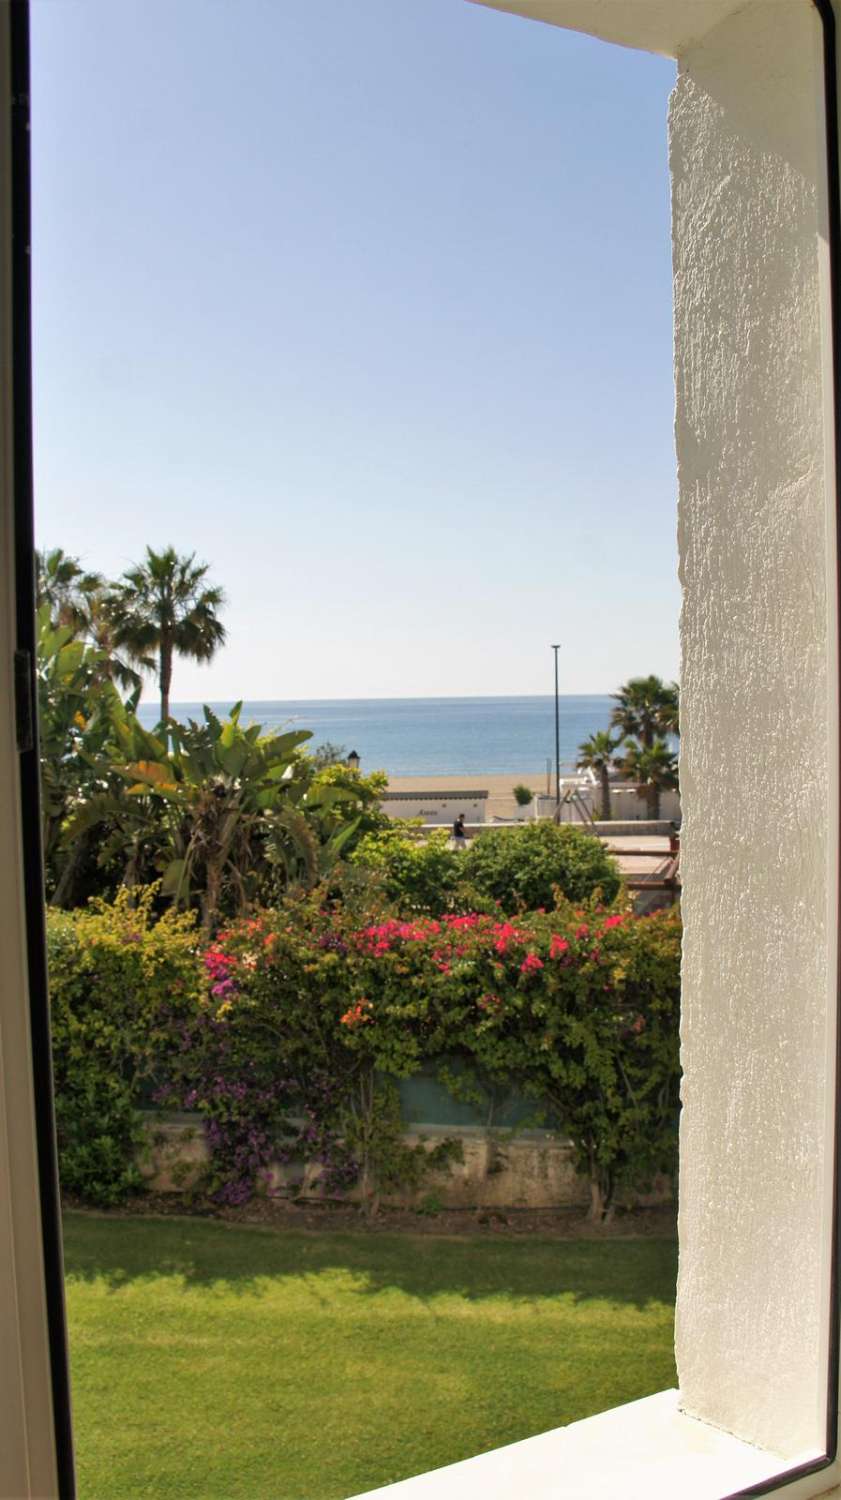 Ferienvermietung. Wohnung mit Blick auf das Meer. Puerto Banús, Marbella.